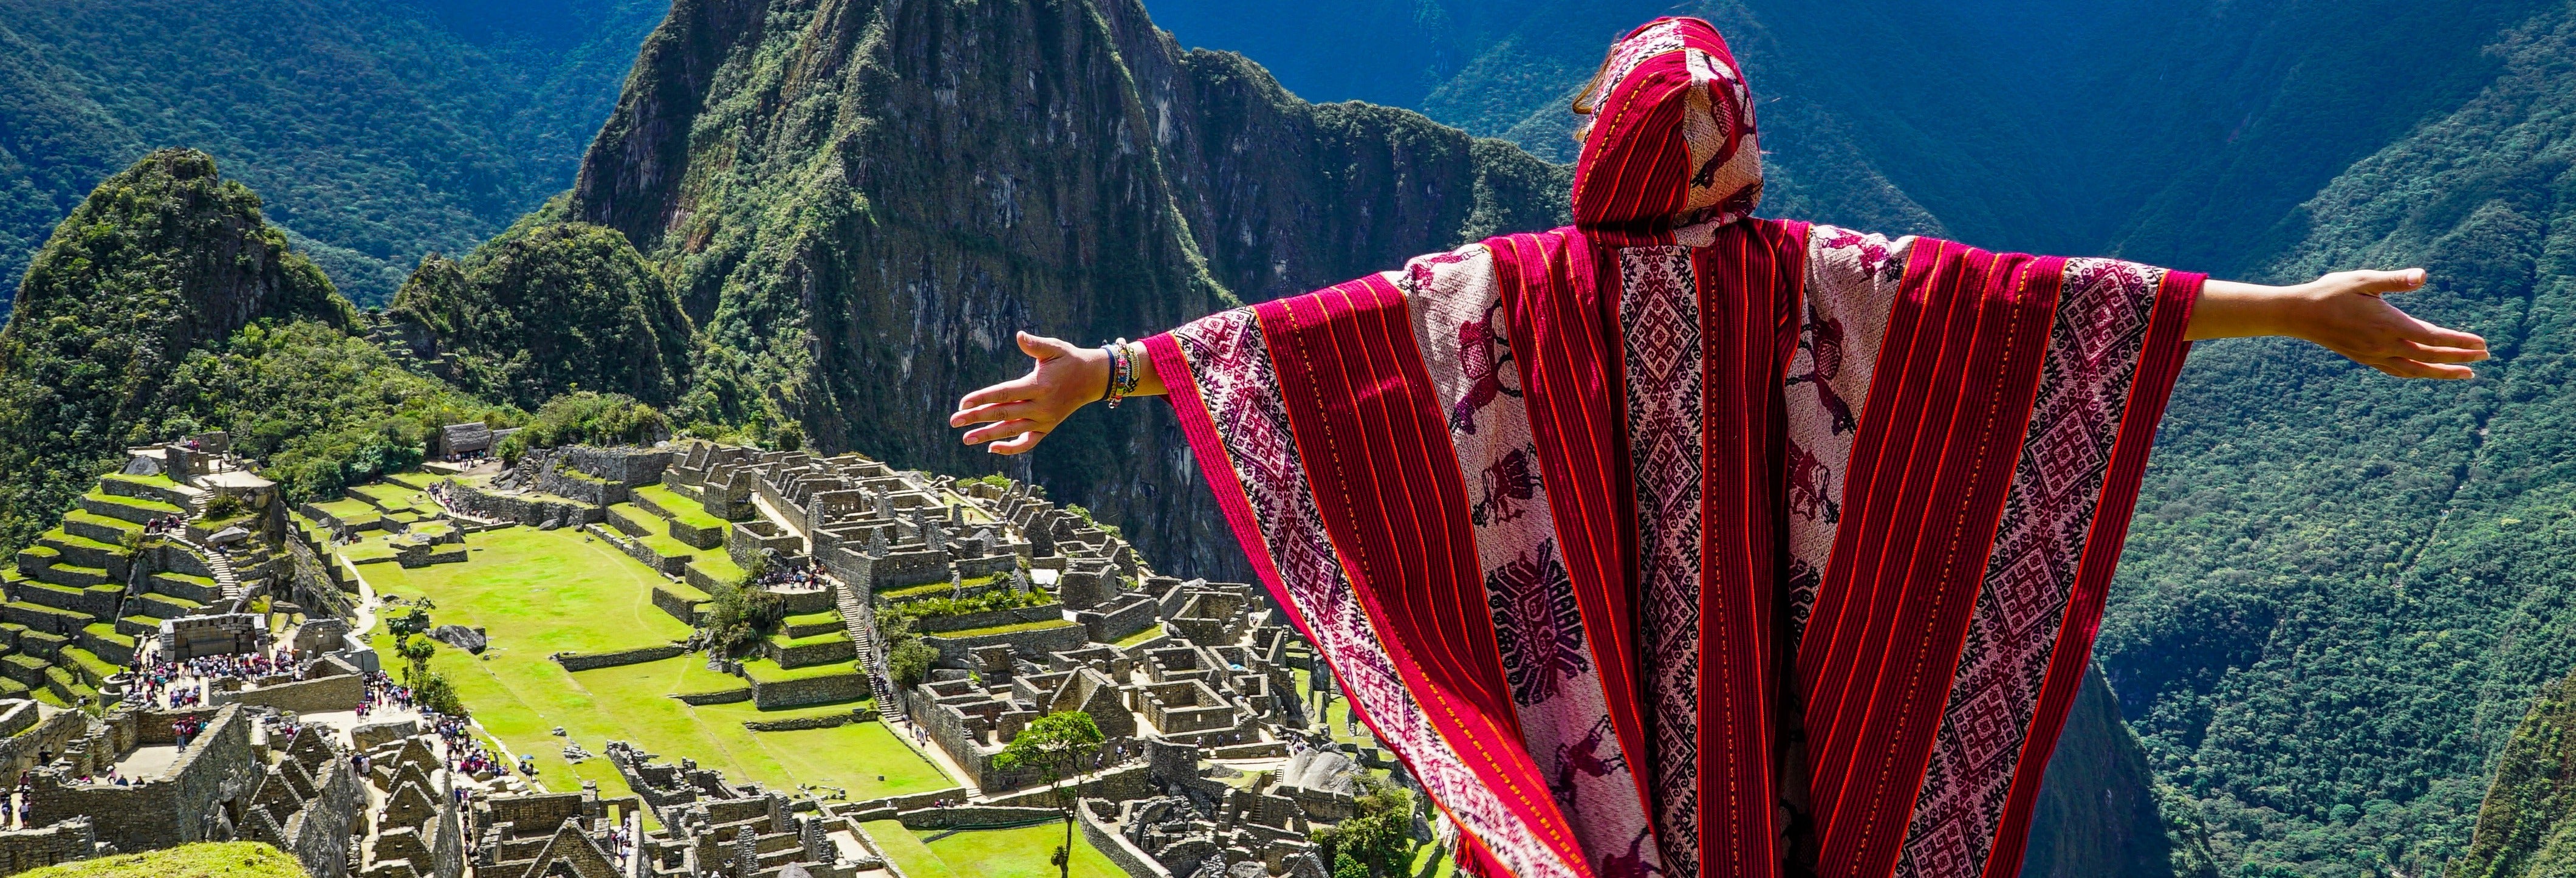 Excursão de 2 dias a Machu Picchu